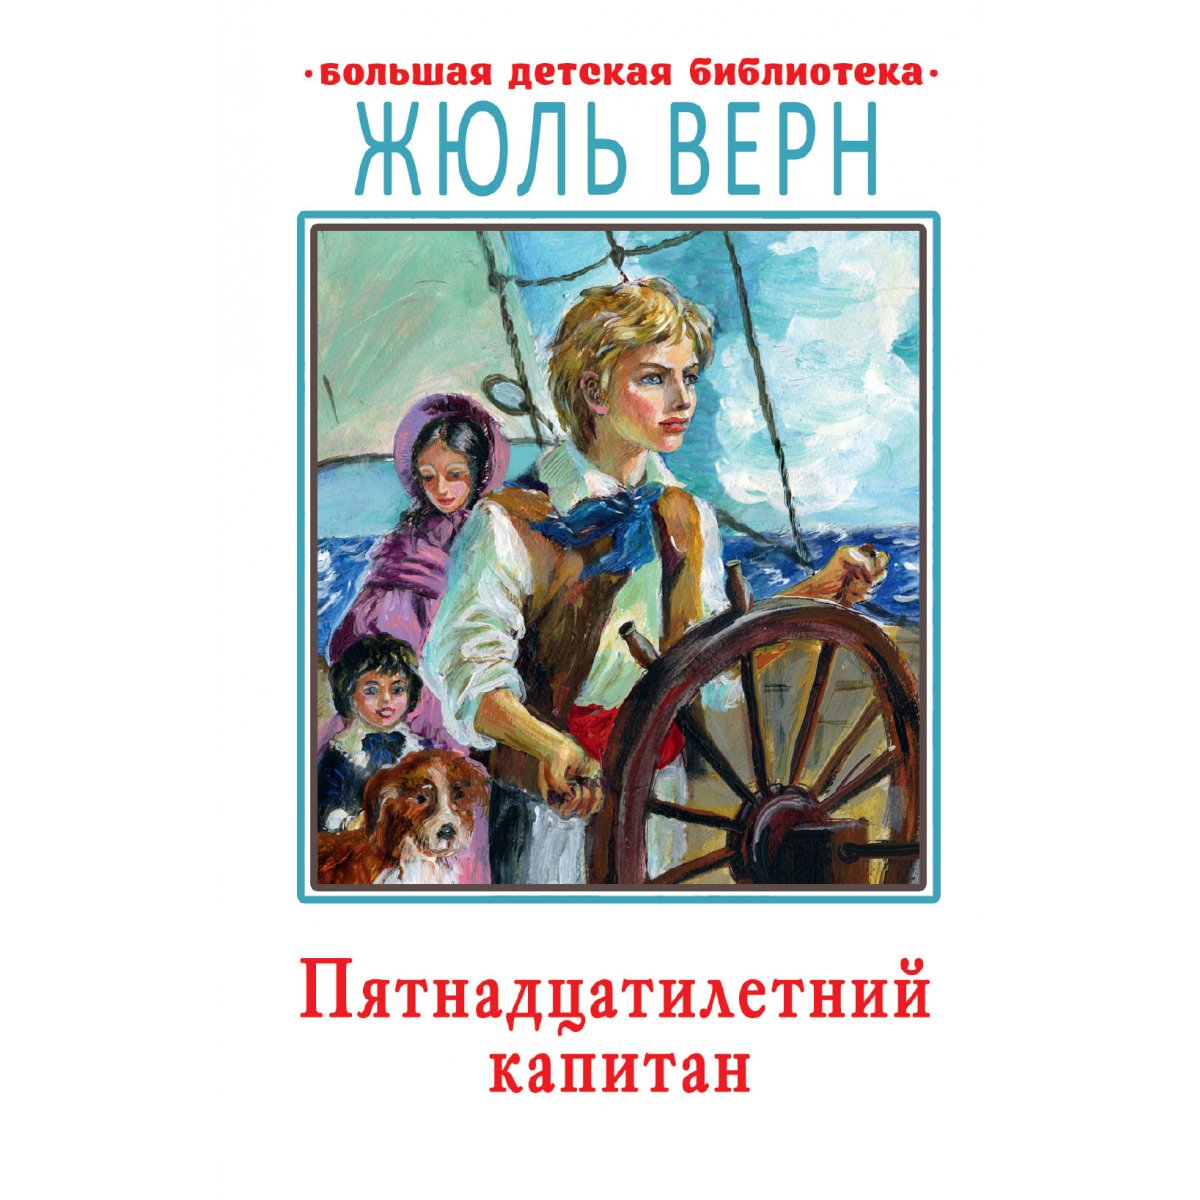 Энтомолог герой книги пятнадцатилетний капитан